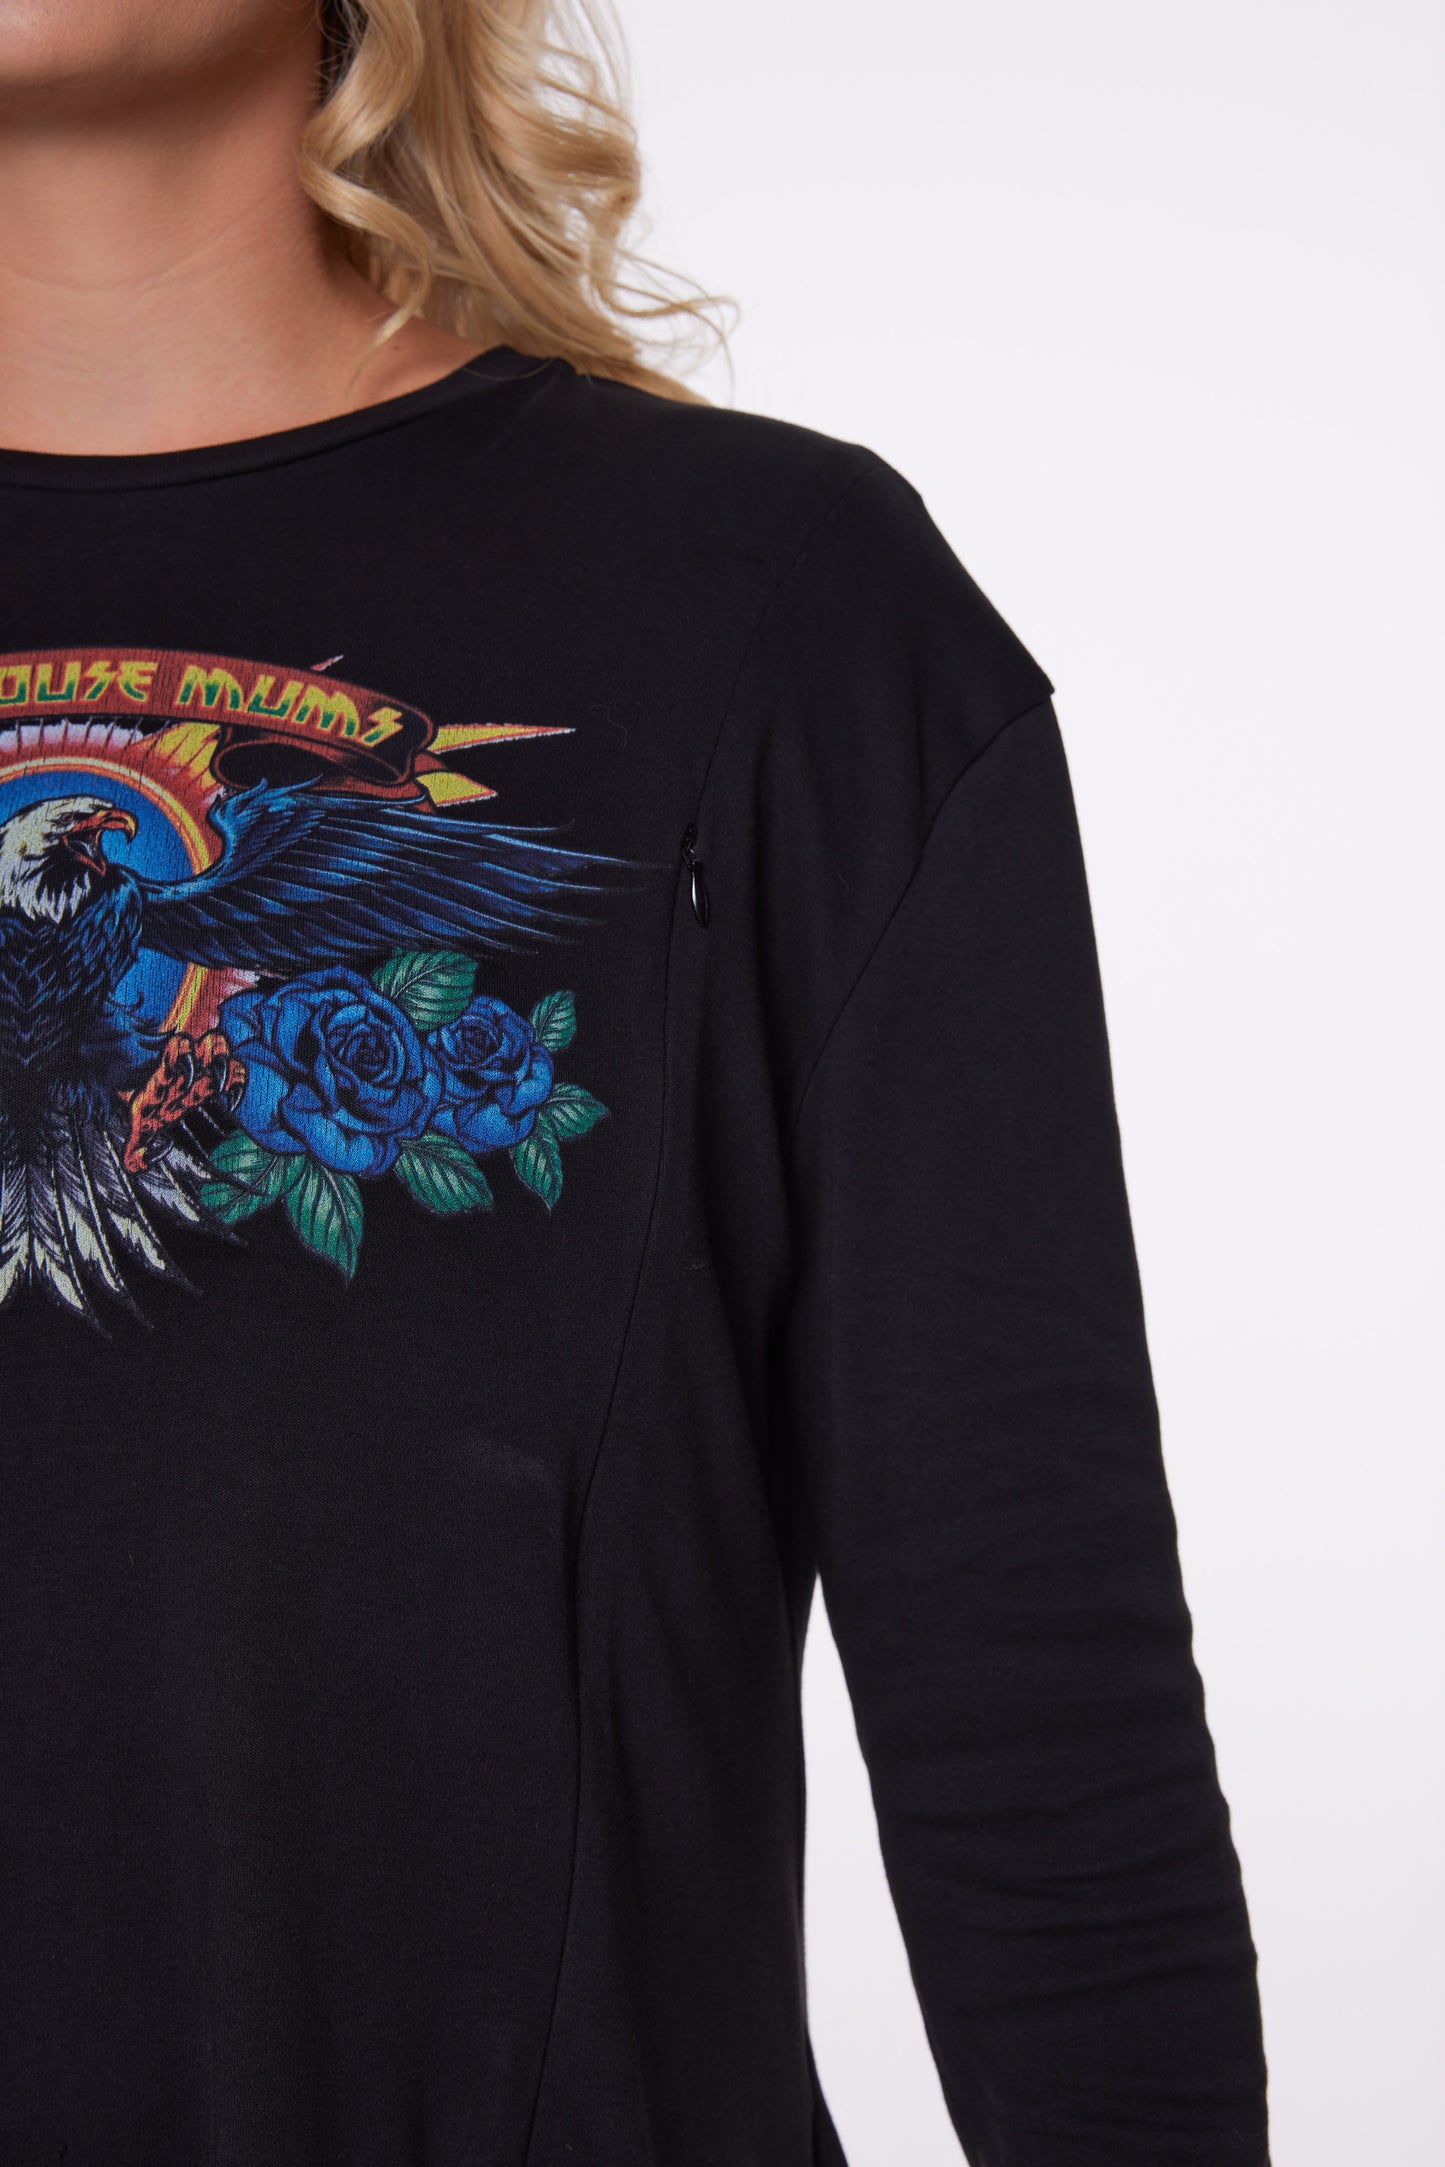 Eagle Eye | Long Sleeve T-Shirt Dress | Black